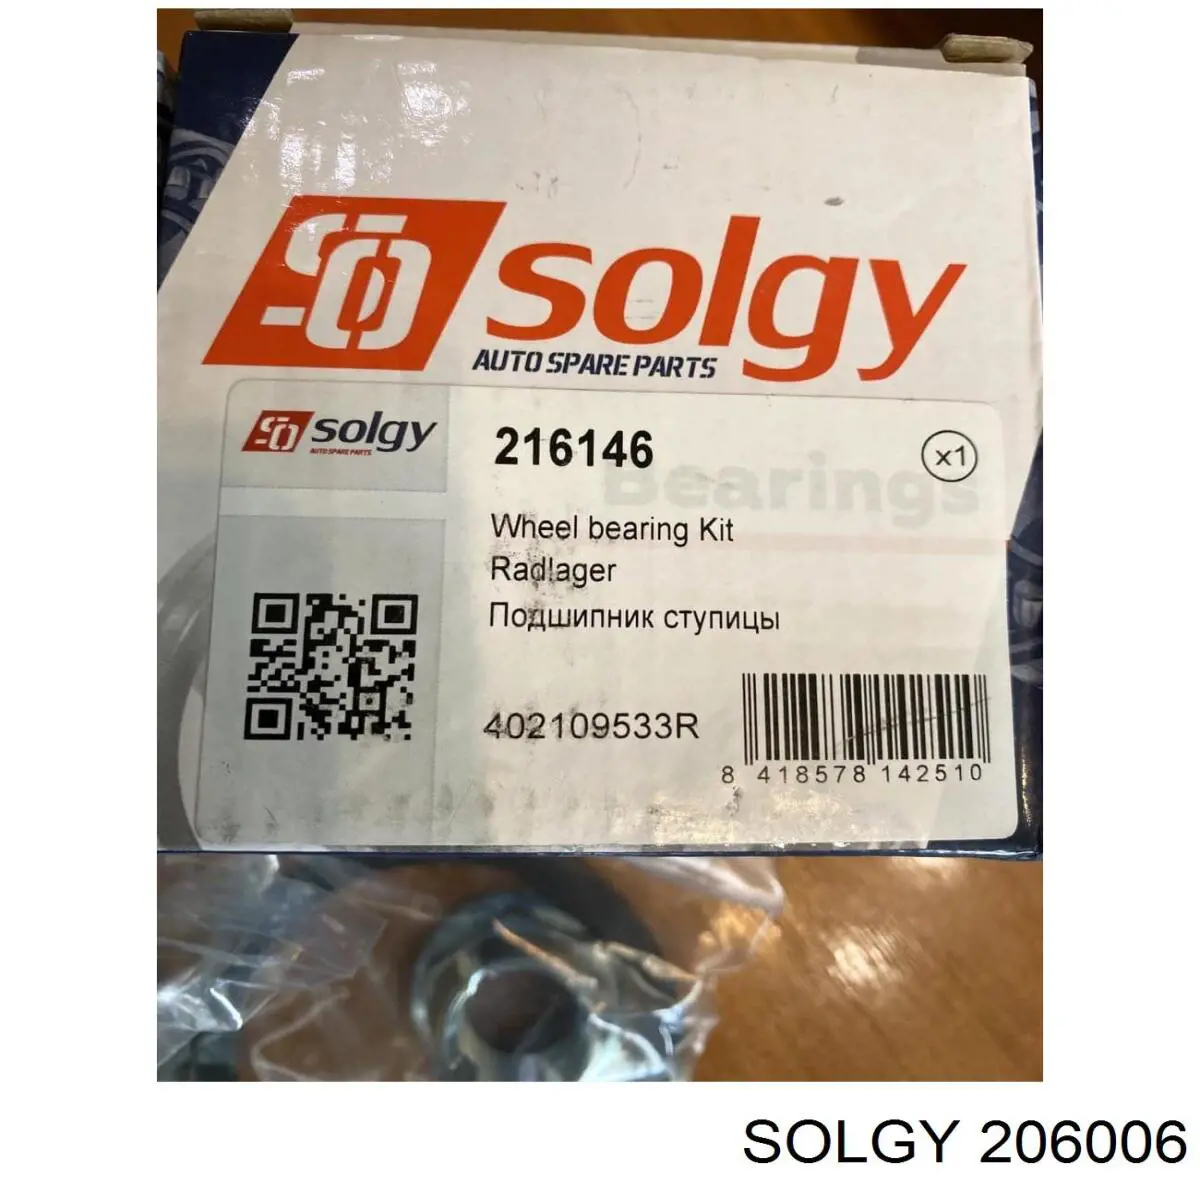 206006 Solgy ponta externa da barra de direção